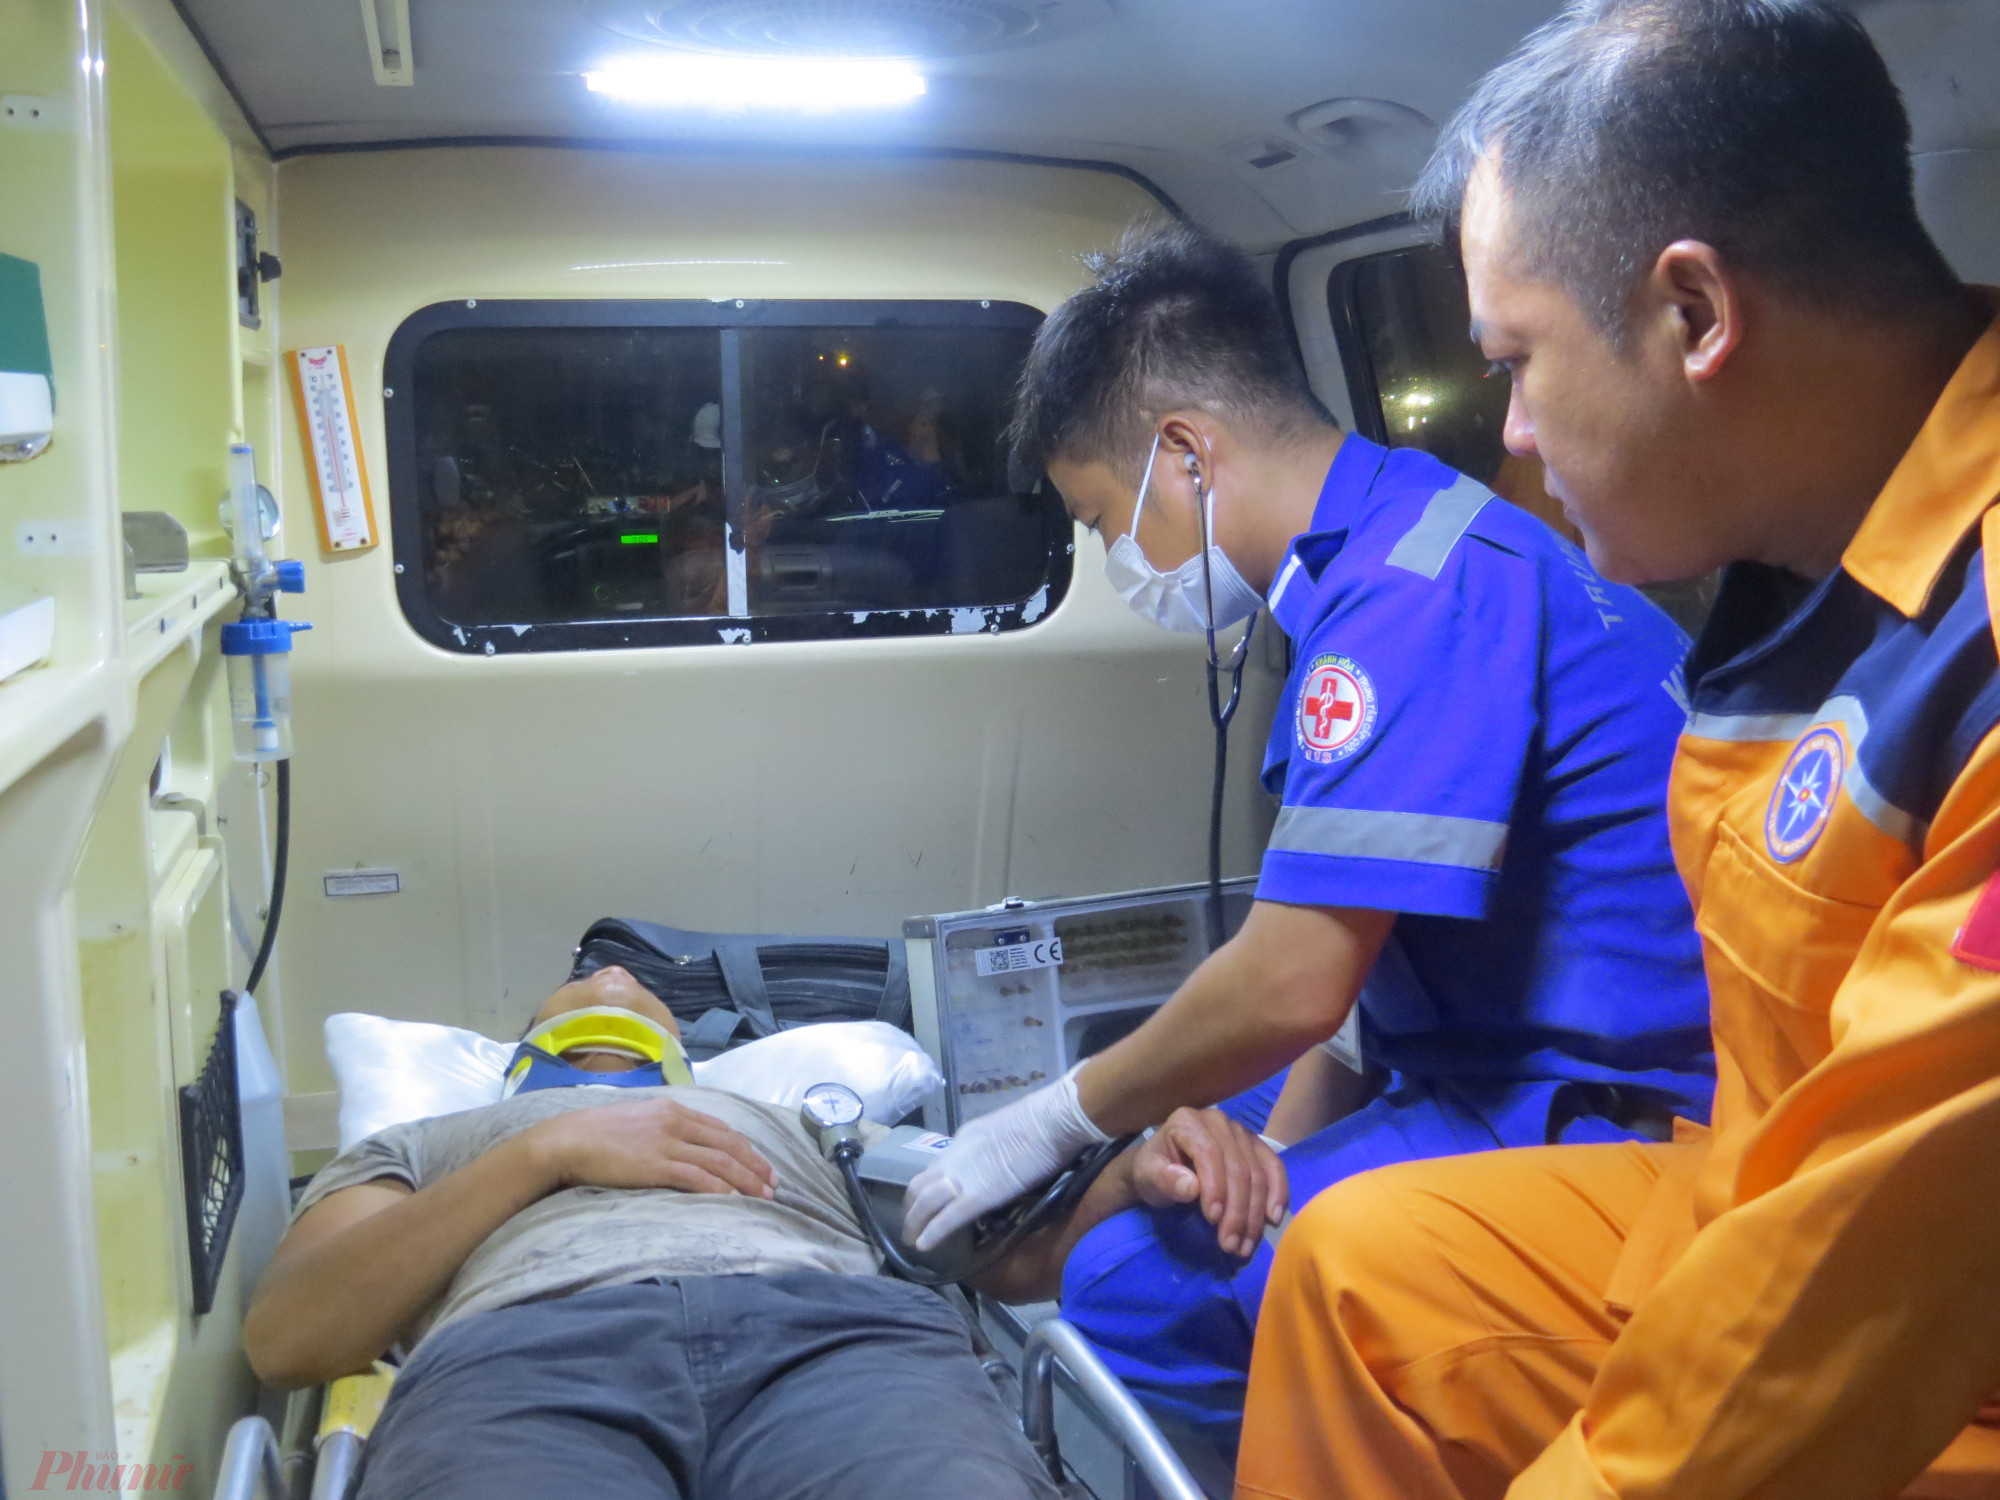 Nhân viên y tế kiếm tra sức khỏe của thuyền viên trước khi xe cấp cứu đưa thuyền viên về Bệnh viện Đa khoa tỉnh Khánh Hòa chữa trị